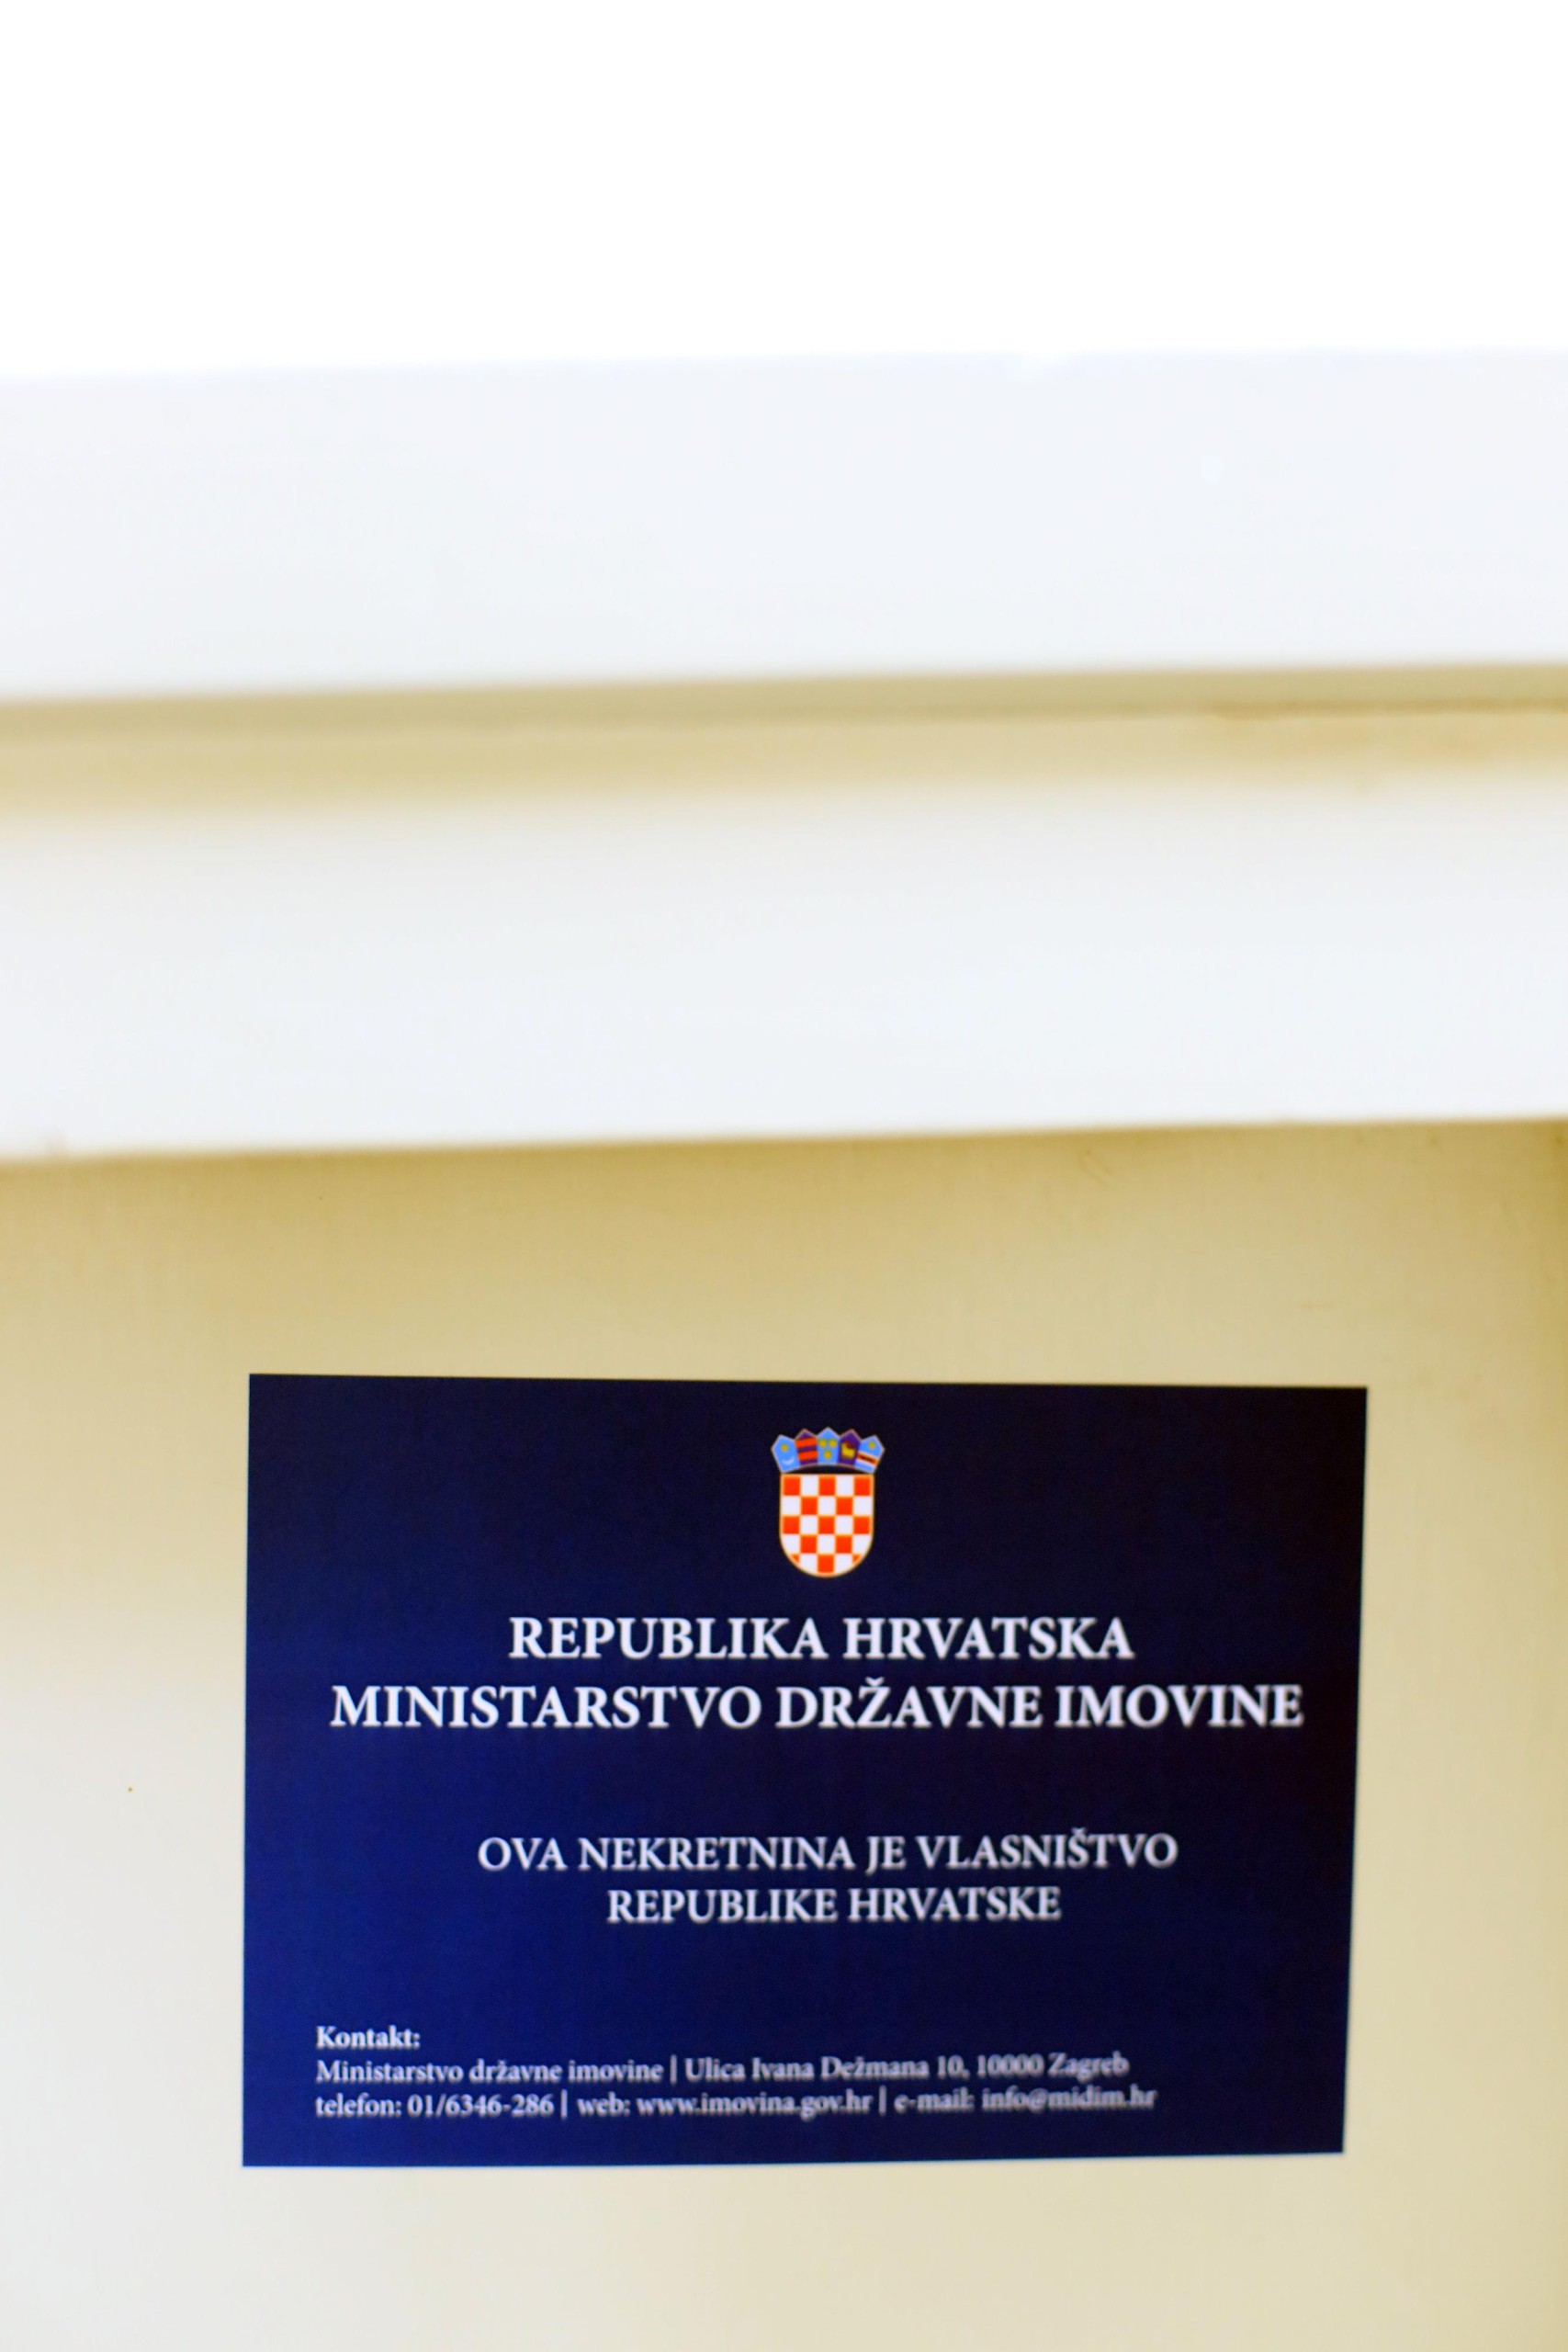 26.05.2018., Zagreb - Ilustracije za drzavnu imovinu. "nPhoto: Slavko Midzor/PIXSELL